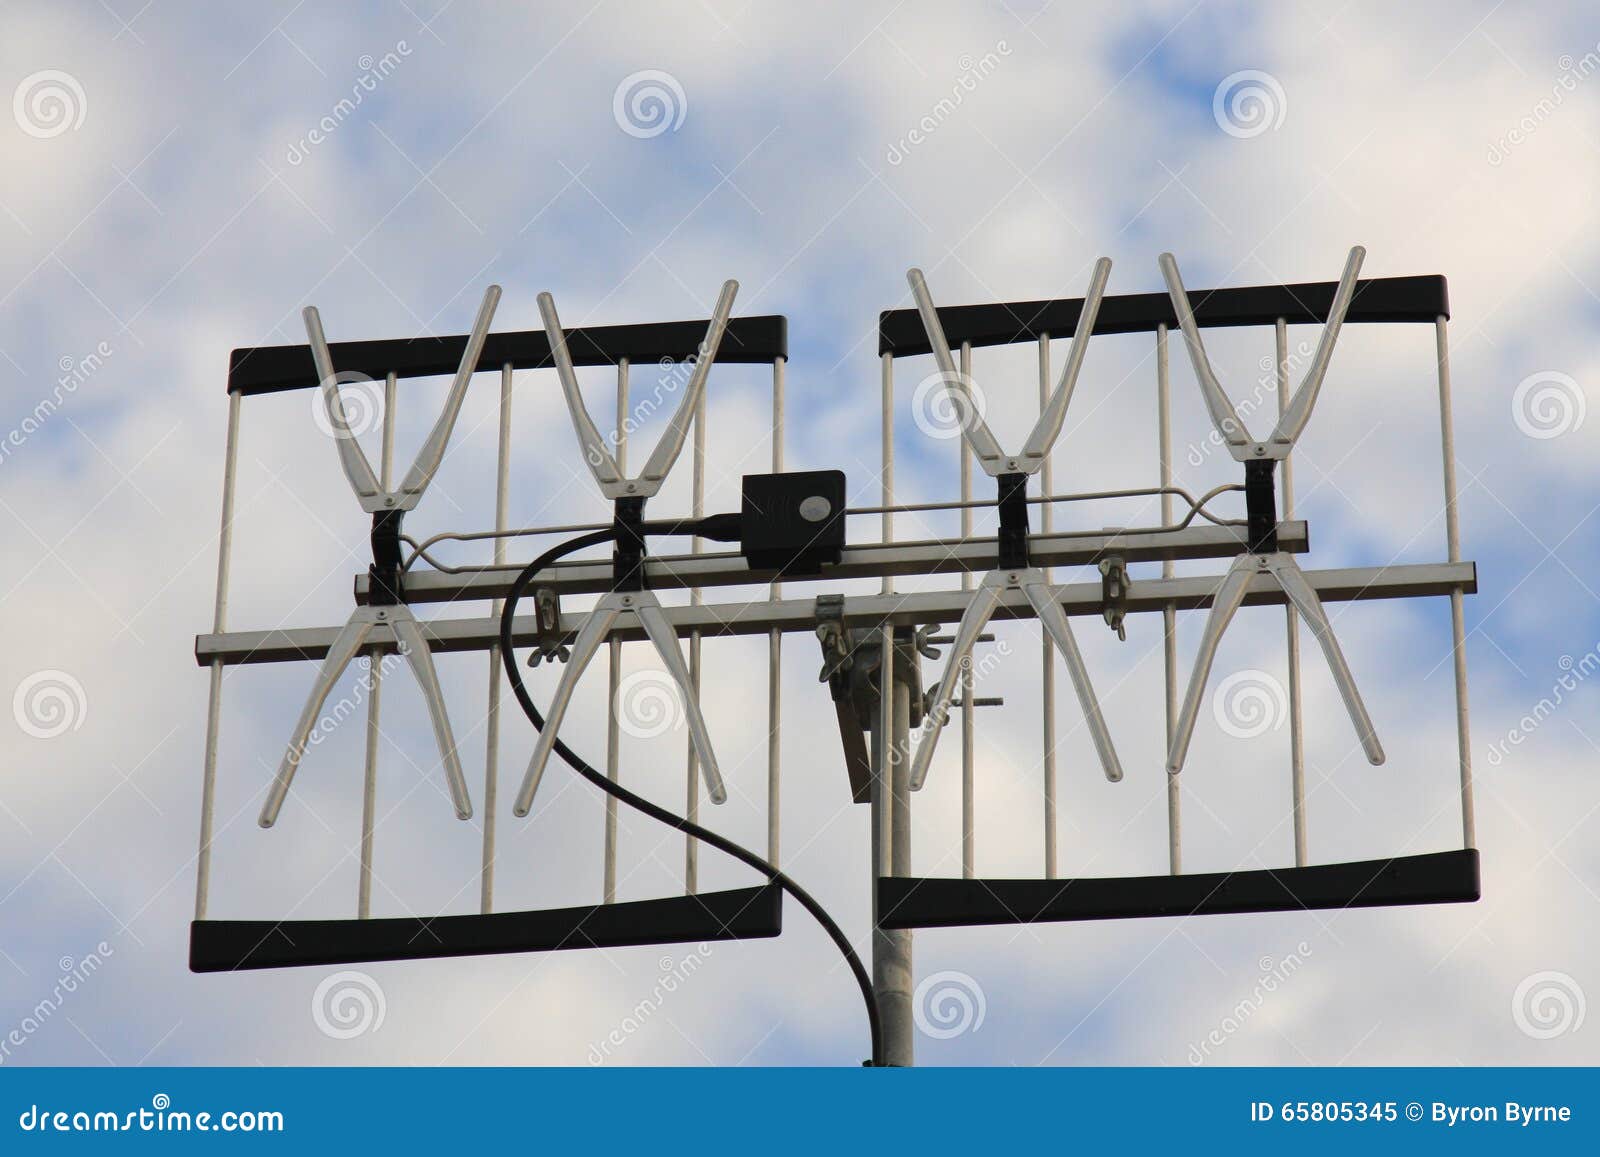 Fernsehen Und Radioantenne/Antenne Stockbild - Bild von seilzug